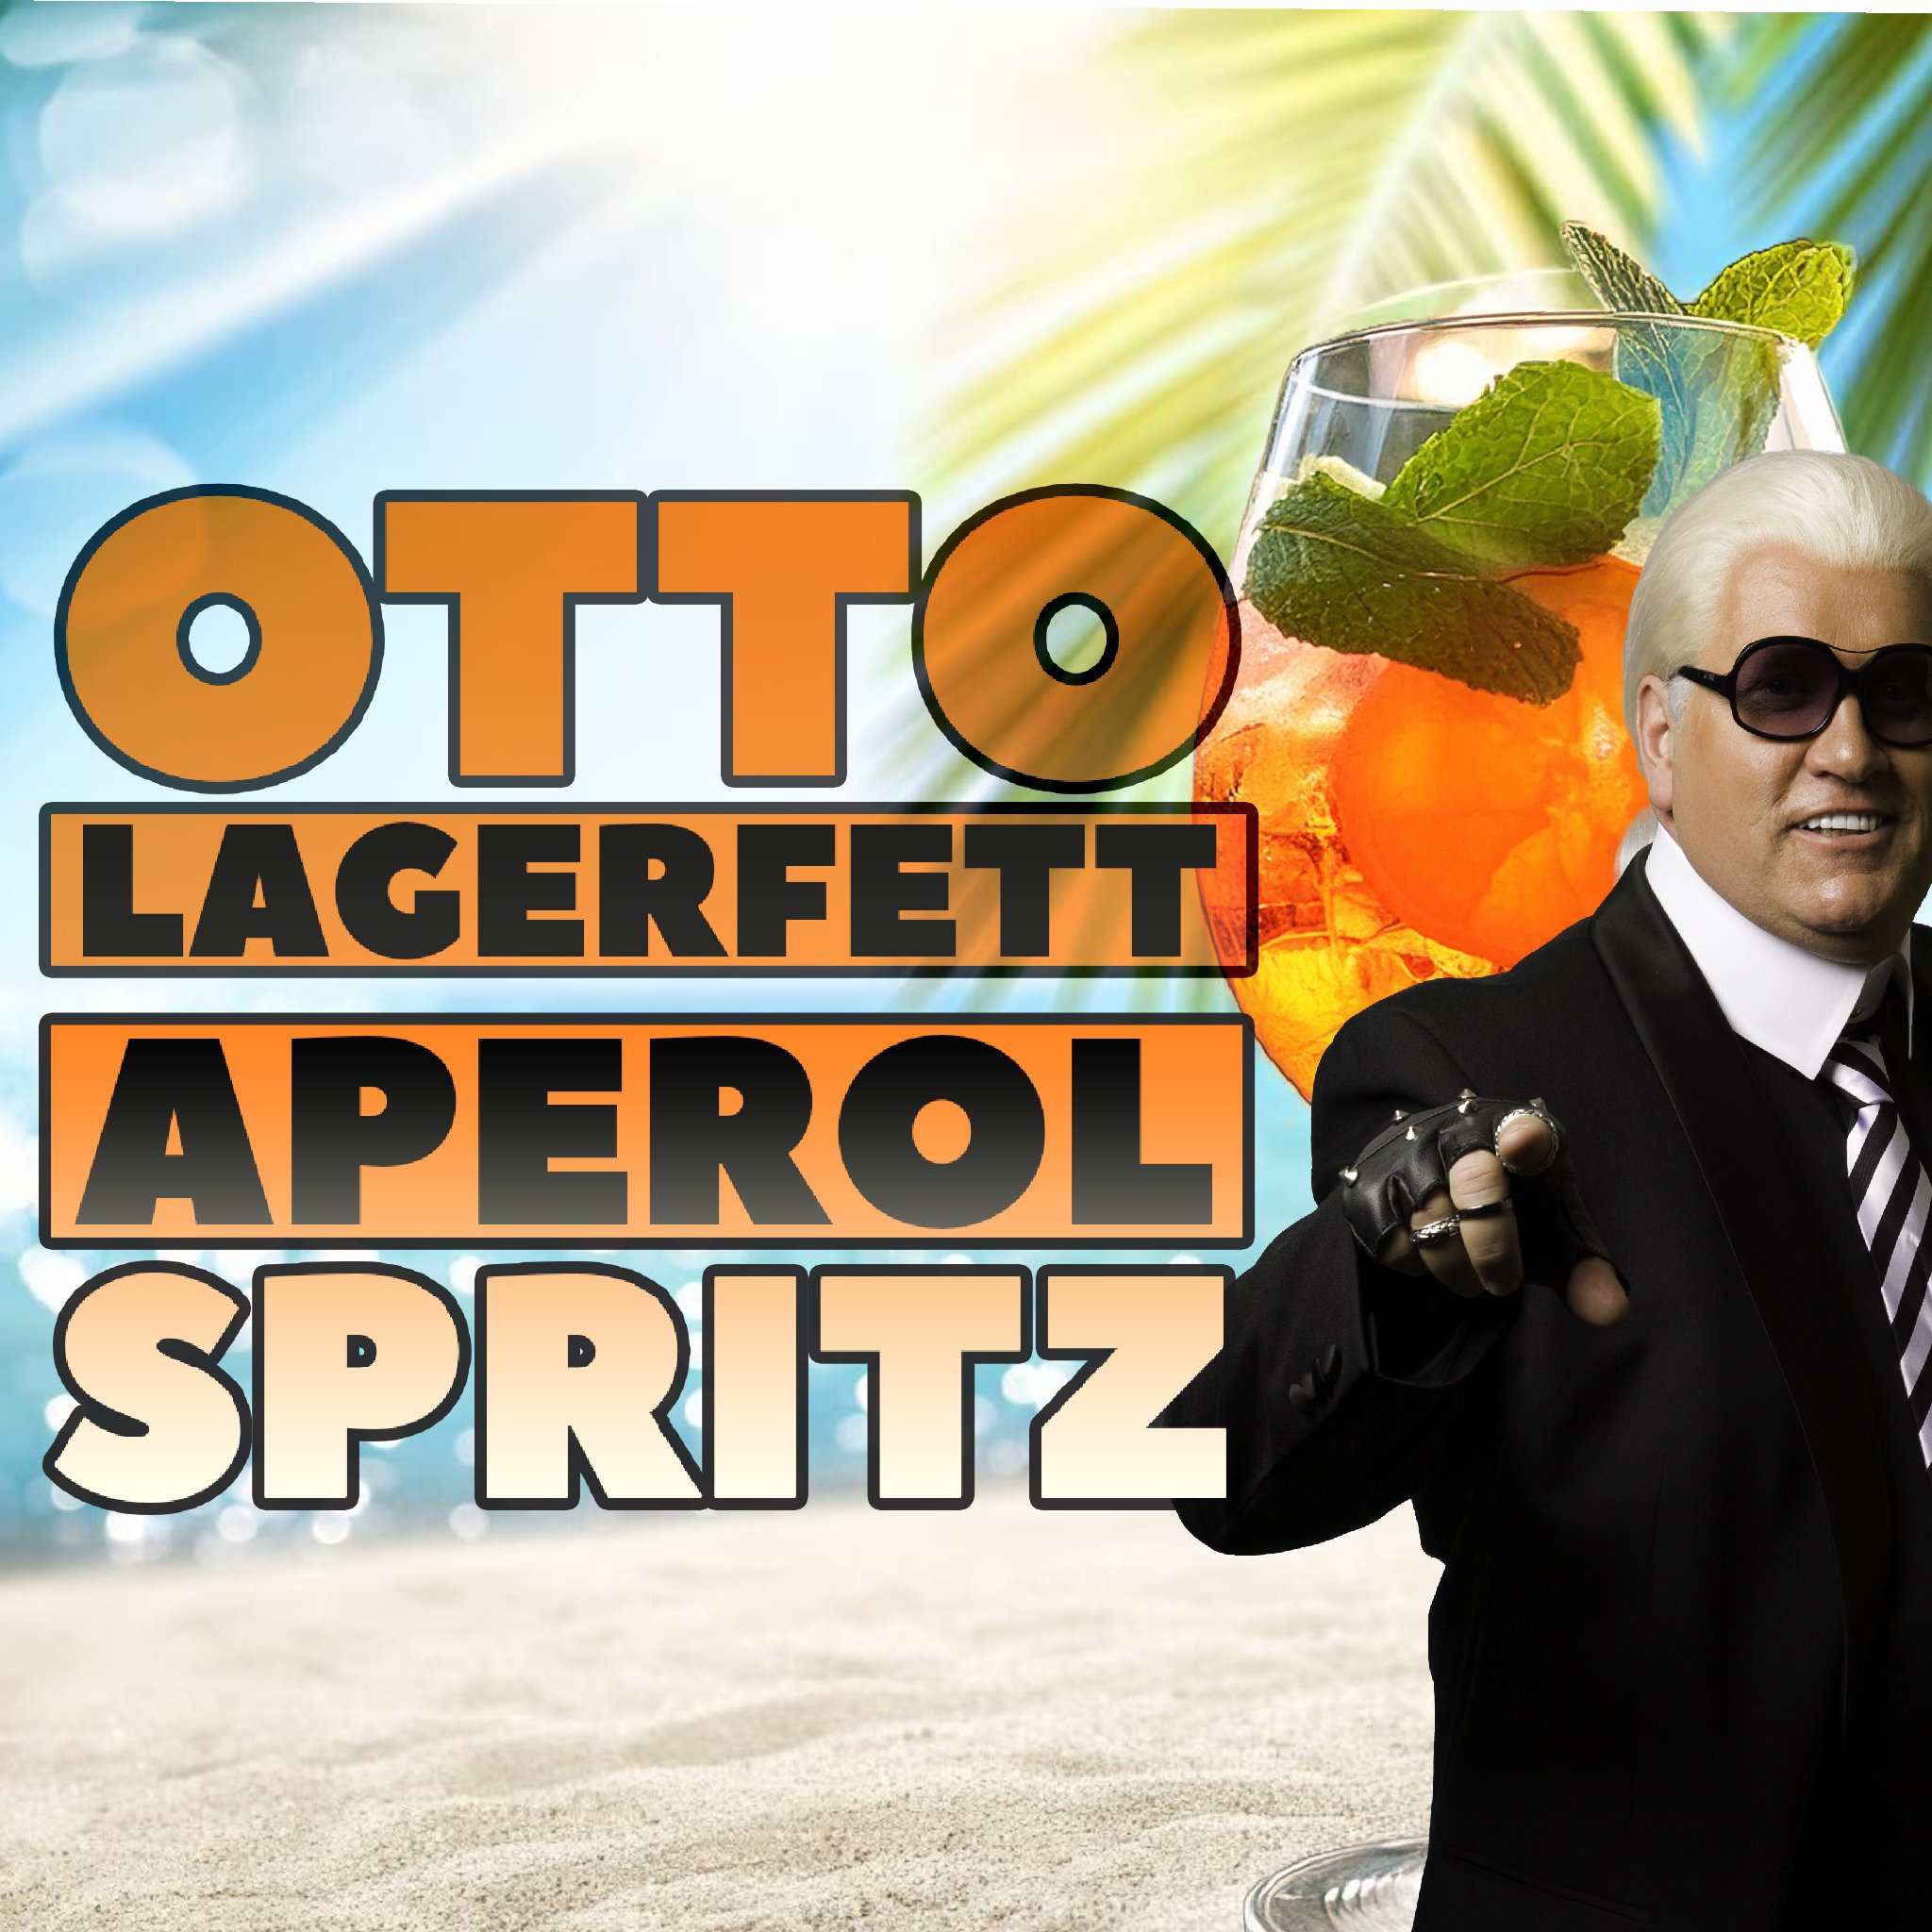 Otto Lagerfett – Aperol Spritz